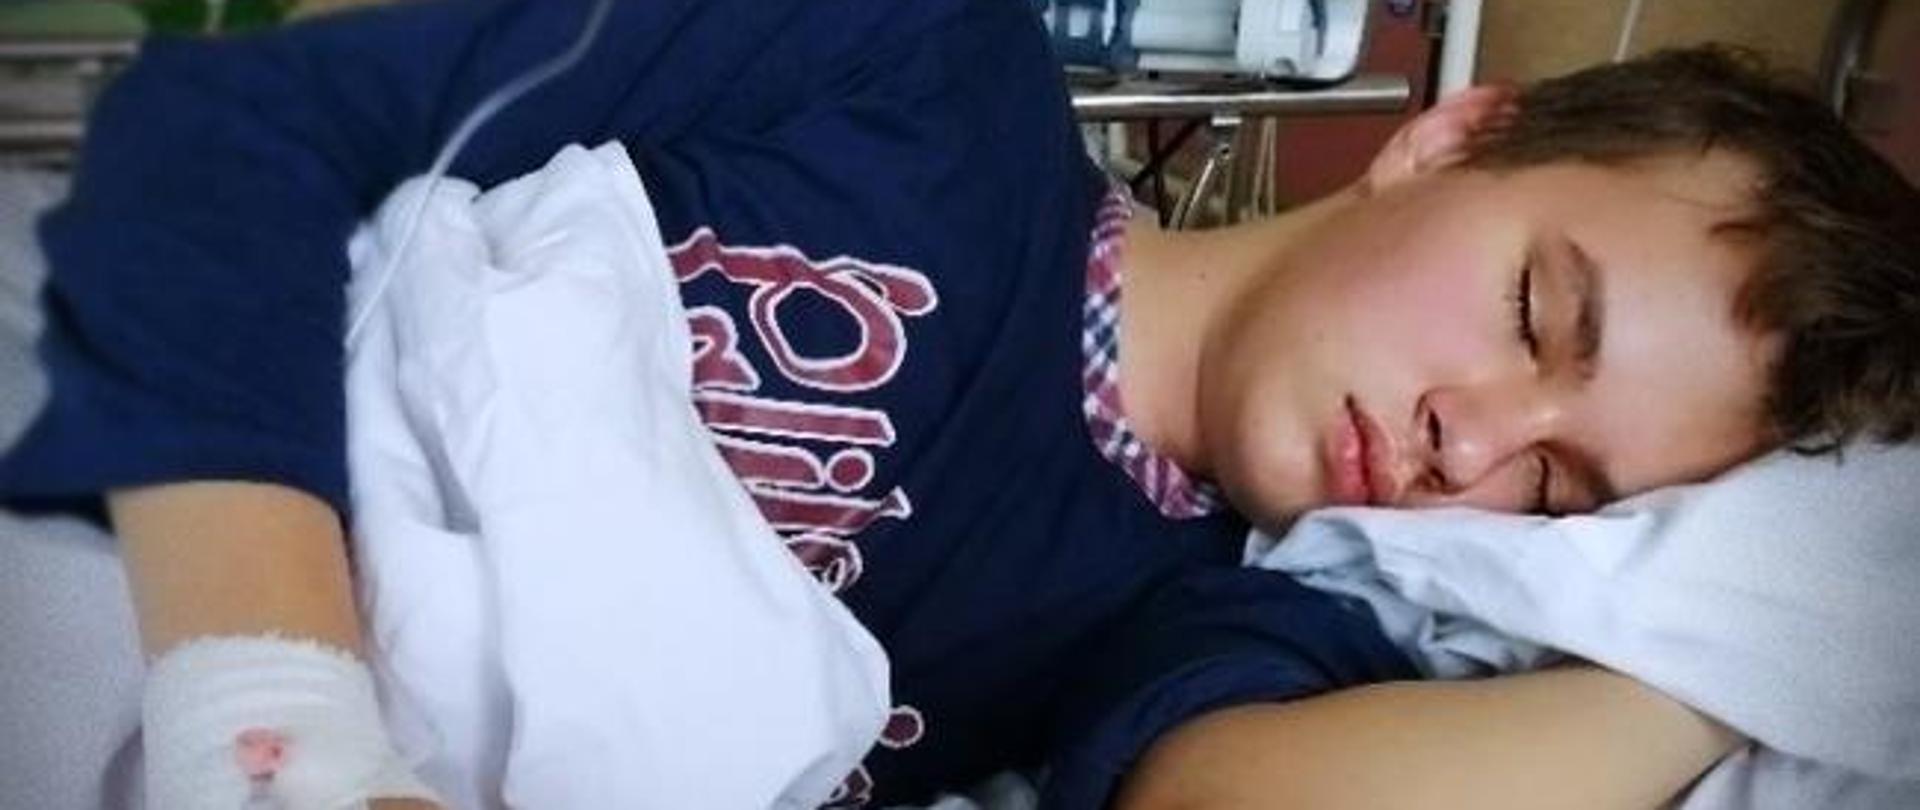 Mateusz leży lewym bokiem na łóżku szpitalnym, chłopiec ma zamknięte oczy, w tle aparatura szpitalna.